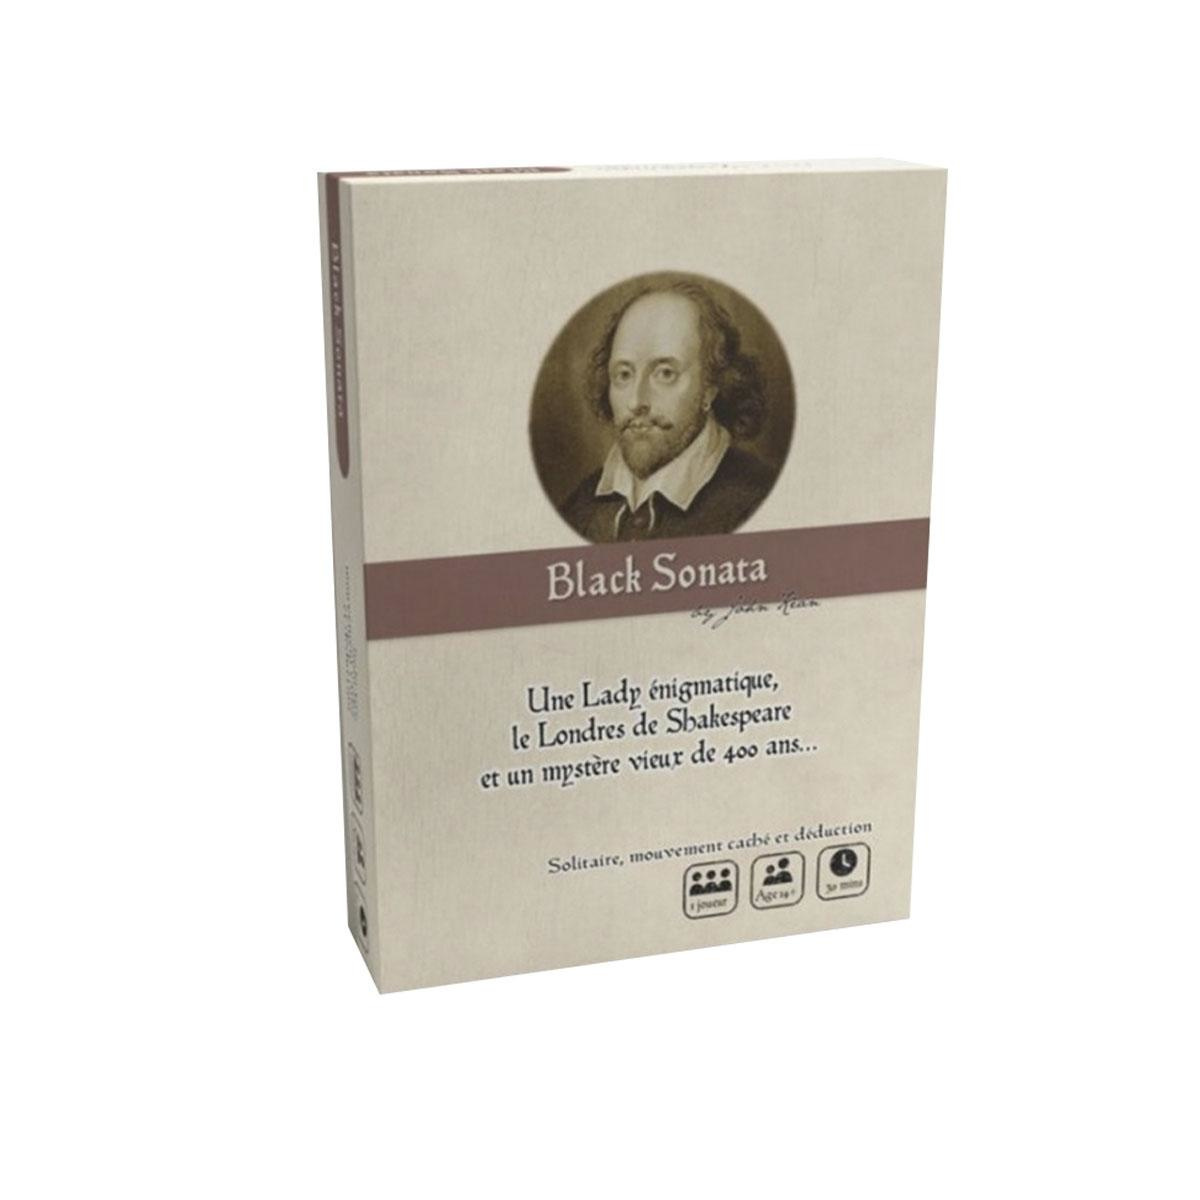 Black Sonata, jeu d'enquête et de déduction dans le Londres élisabéthain, 25 euros, philibertnet.com, photos: sdp